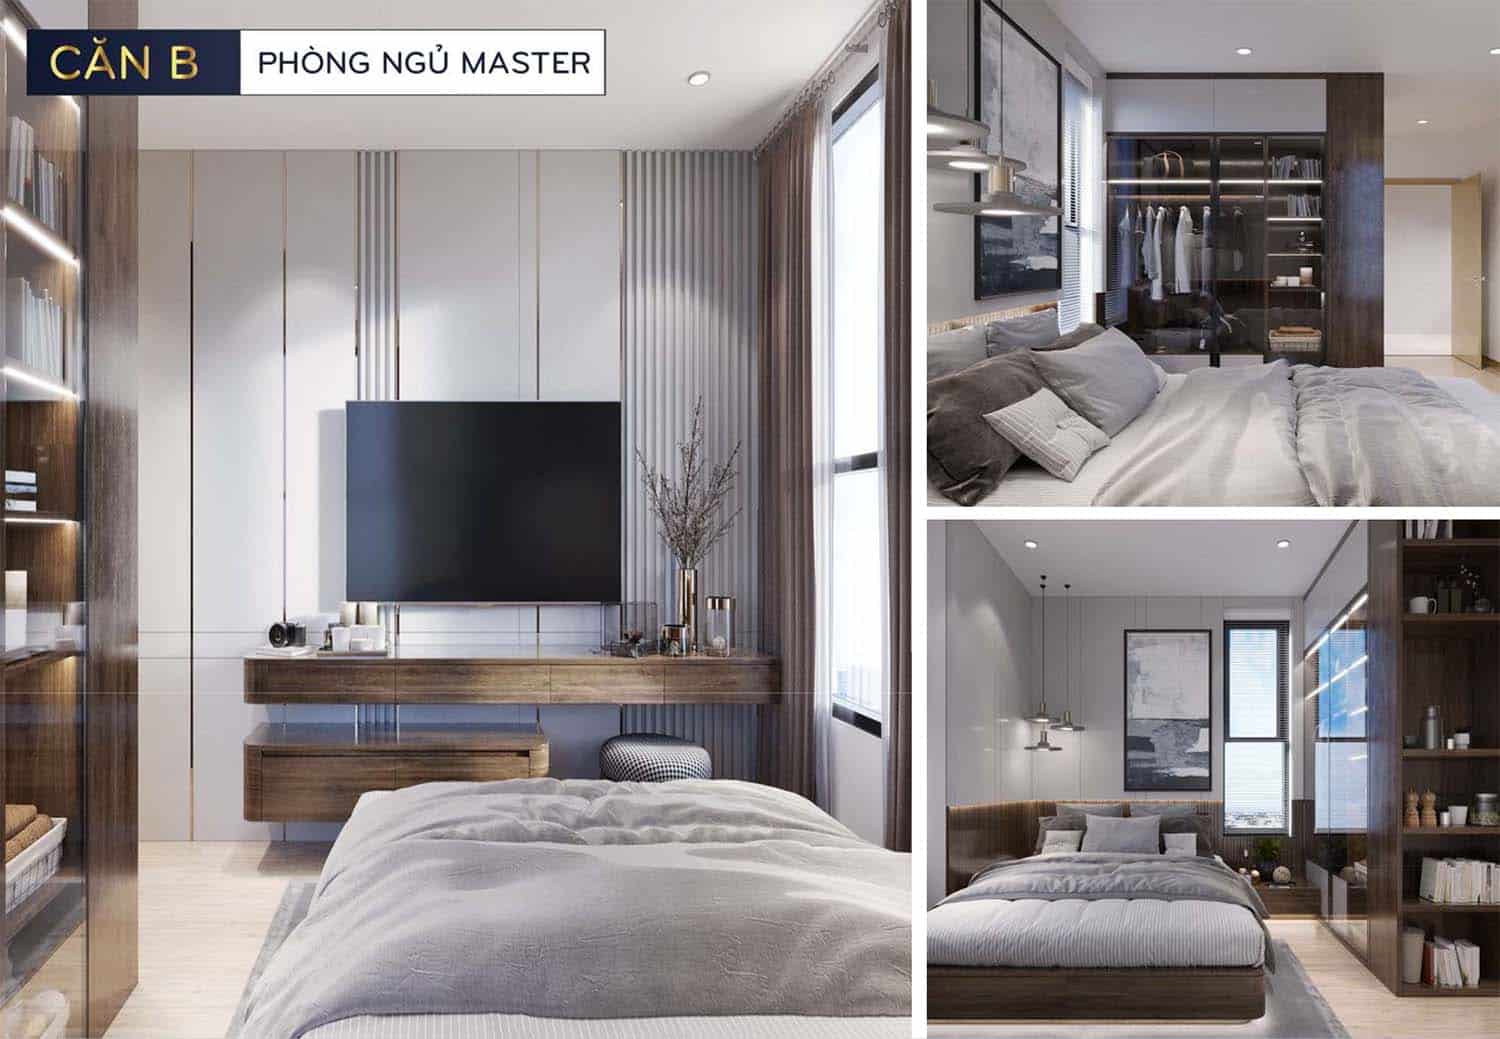 Hình ảnh thiết kế nhà mẫu Bcons Polaris căn B phòng ngủ Master